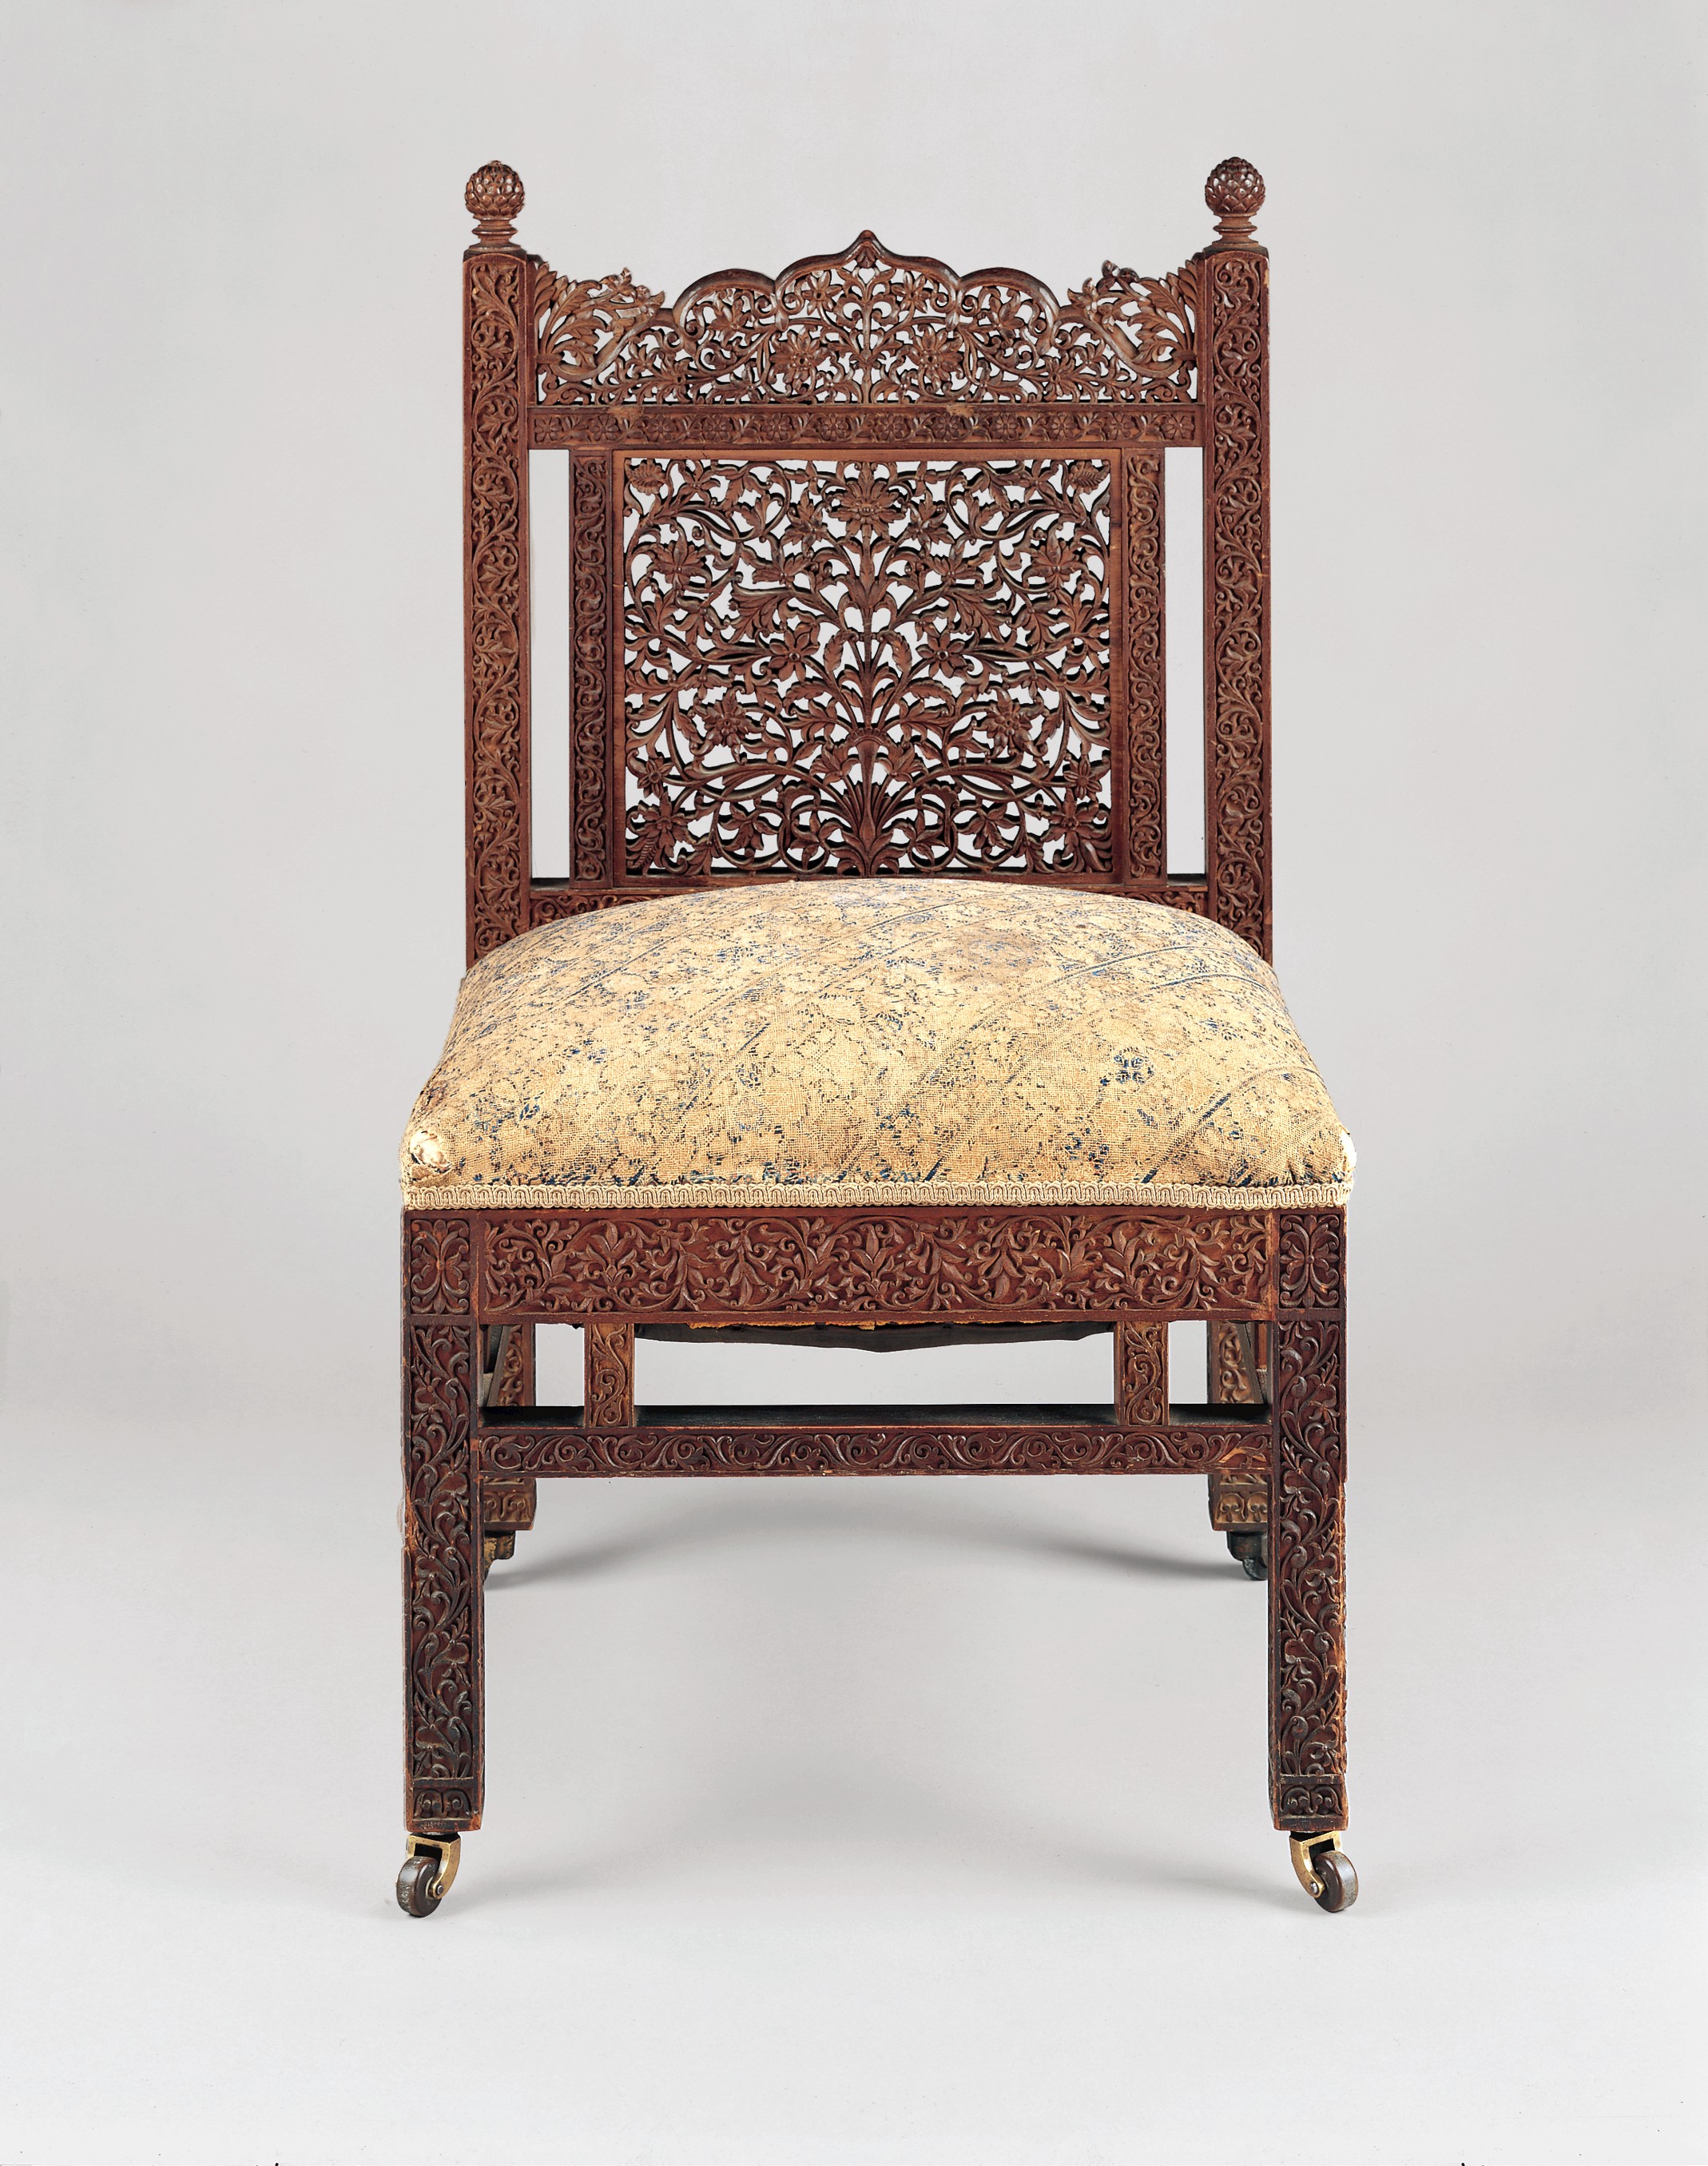 مقعد by Lockwood de Forest - حوالي 1881-6 - 82.2 x 46.4 x 47 cmسم 